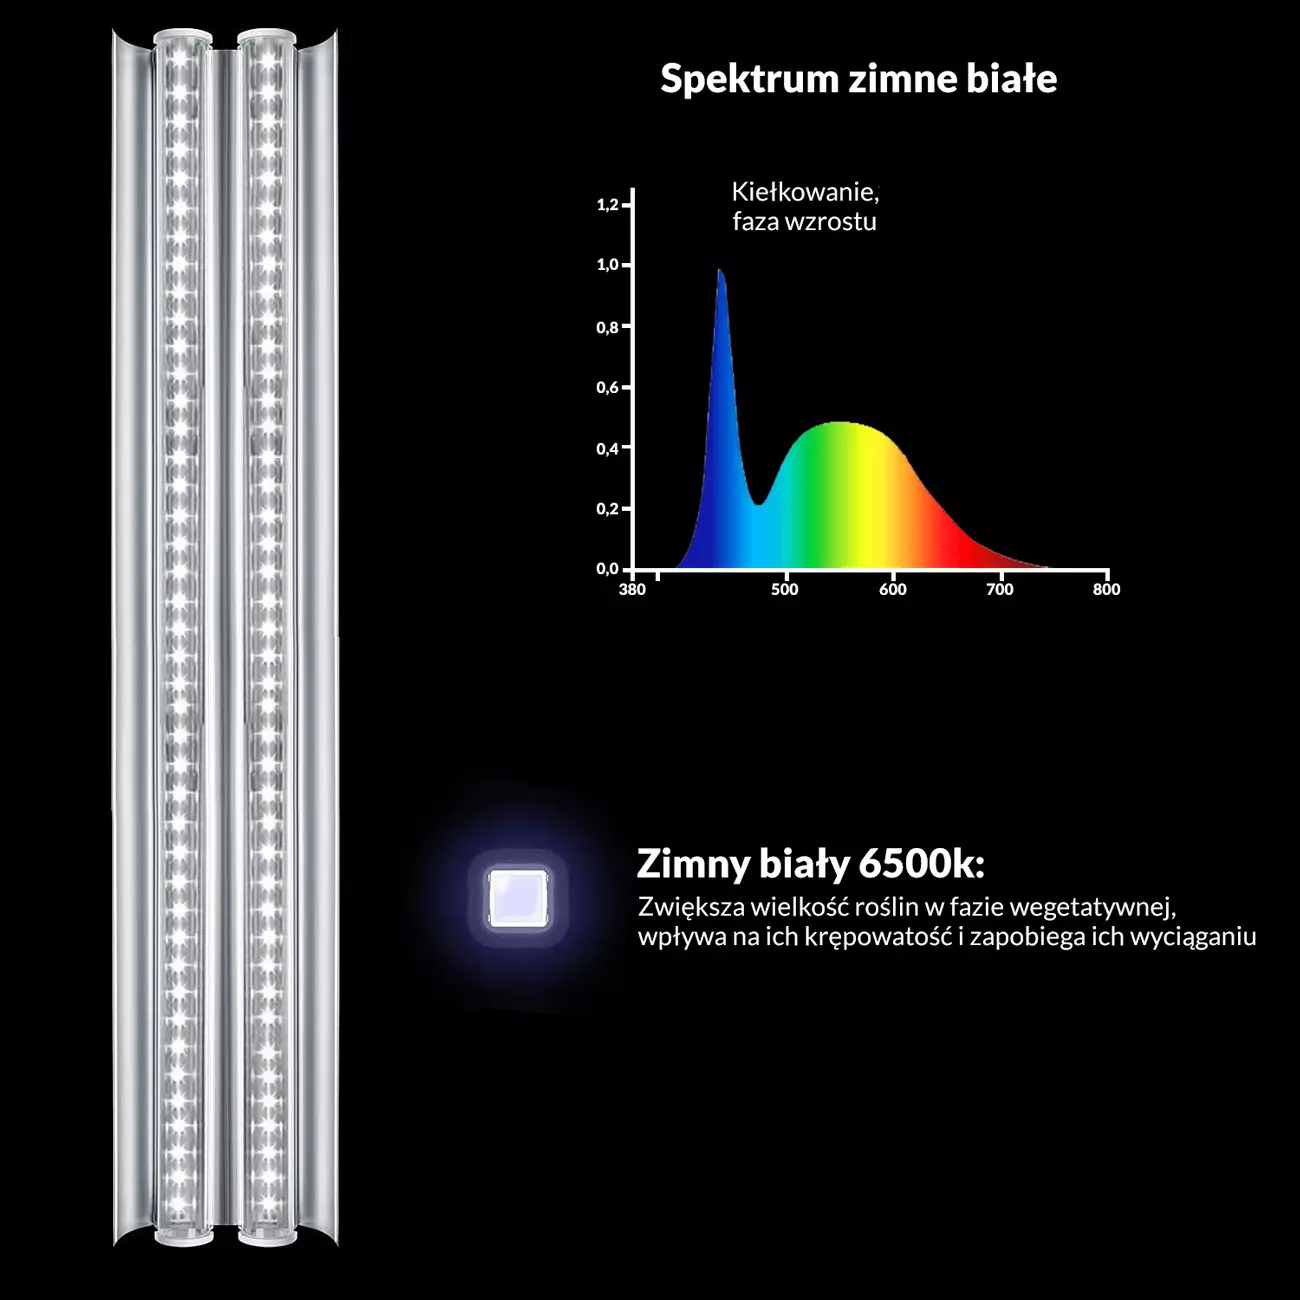 lampa t5 zimny biały - spektrum